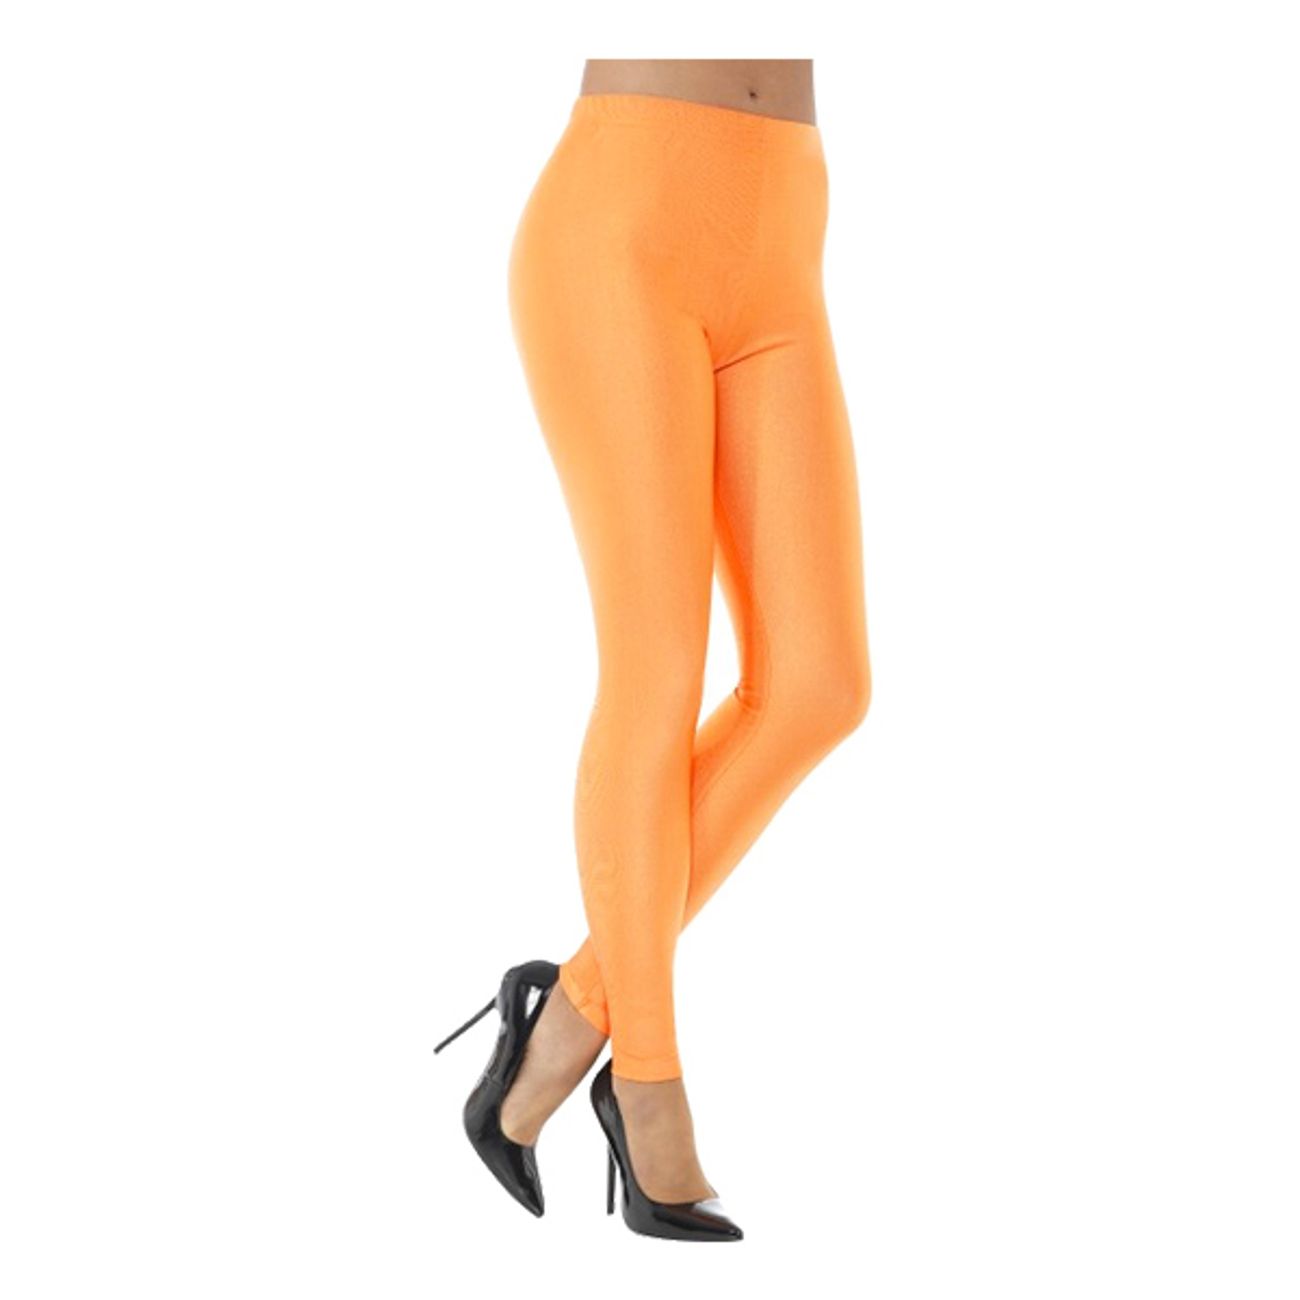 80-tals-disco-spandex-leggings-orange-1